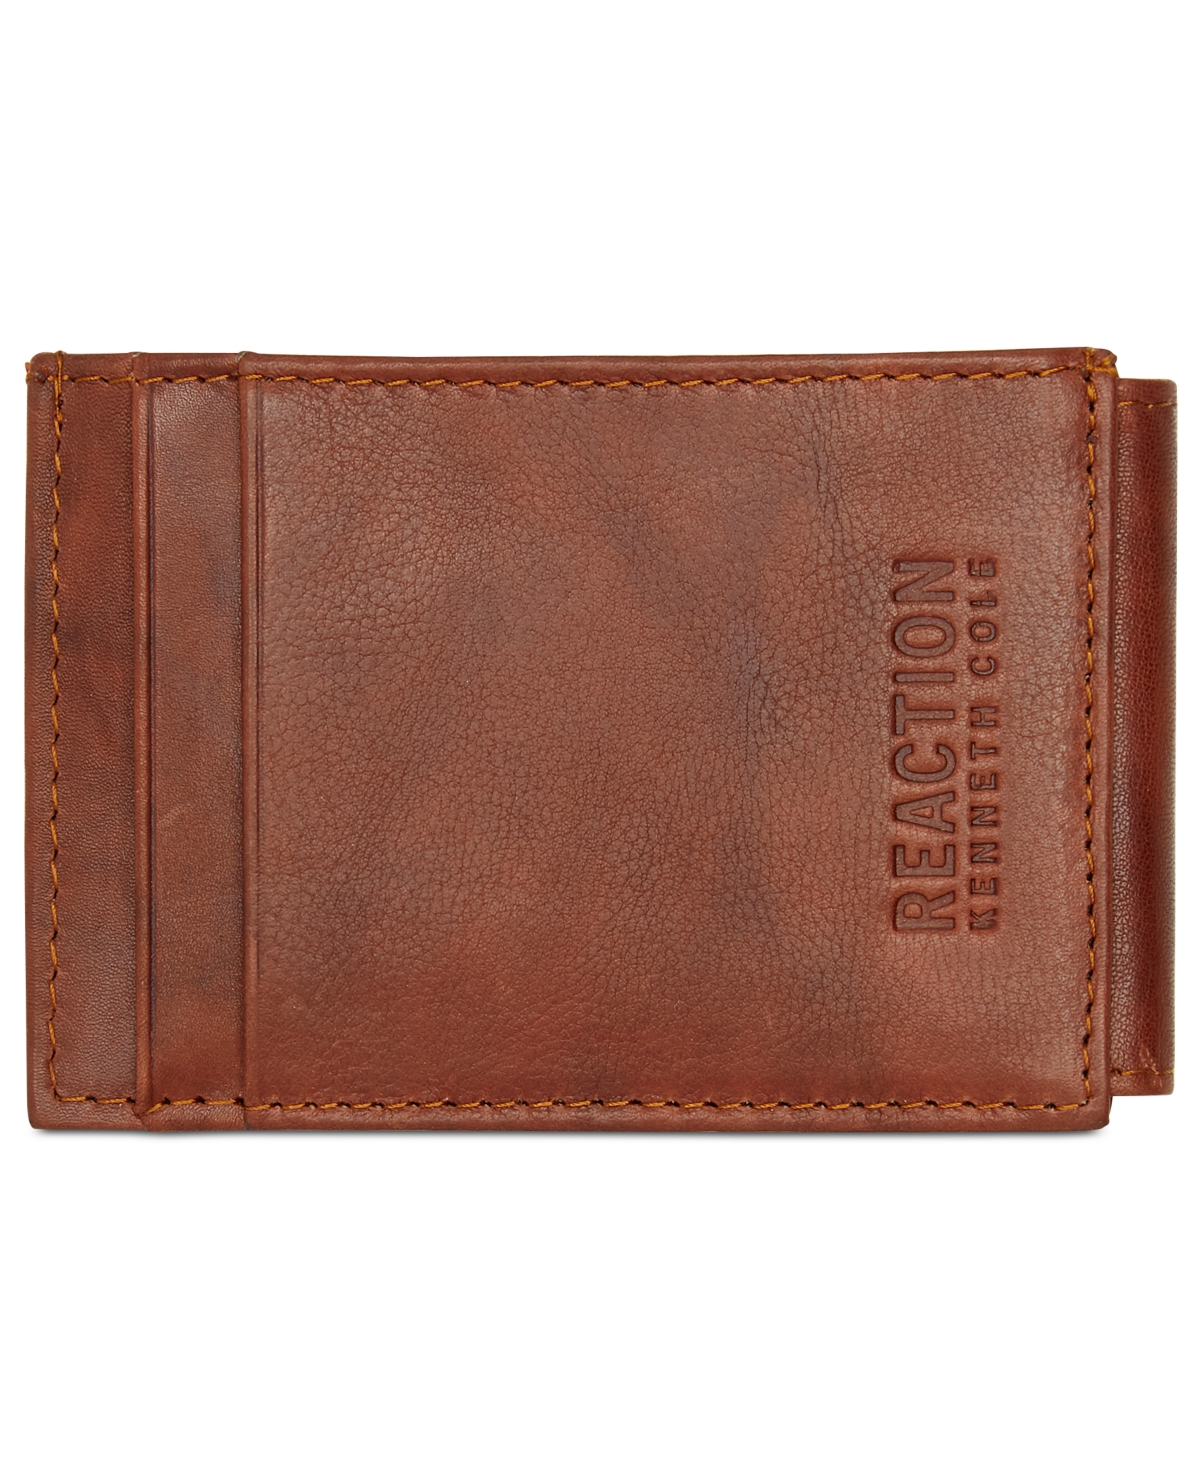 Men's Crunch Magnetic Front-Pocket Leather Wallet - Tan